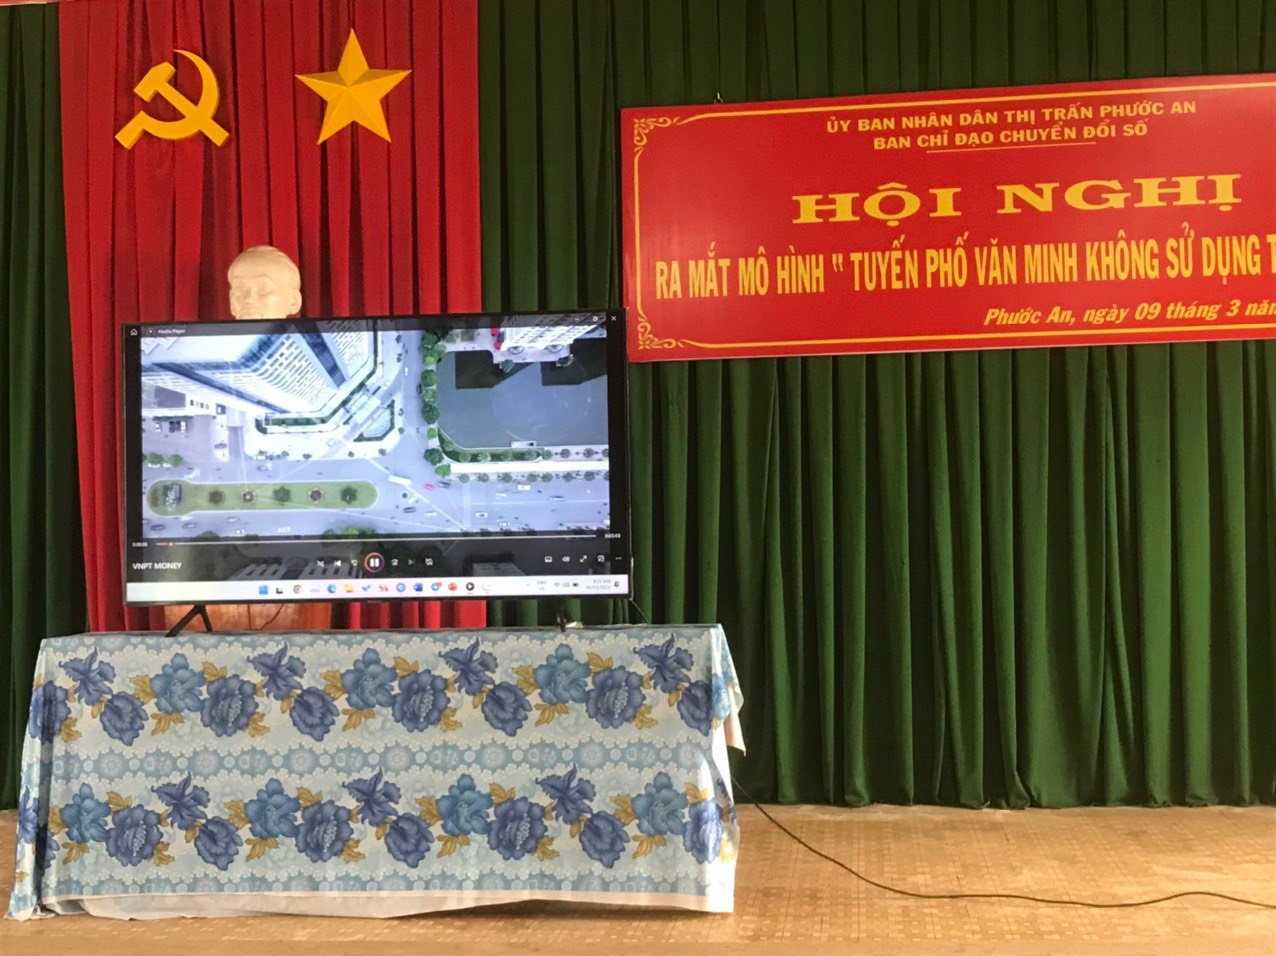  UBND thị trấn Phước An tổ chức Hội nghị ra mắt mô hình“Tuyến phố Văn minh, không dùng tiền mặt” 